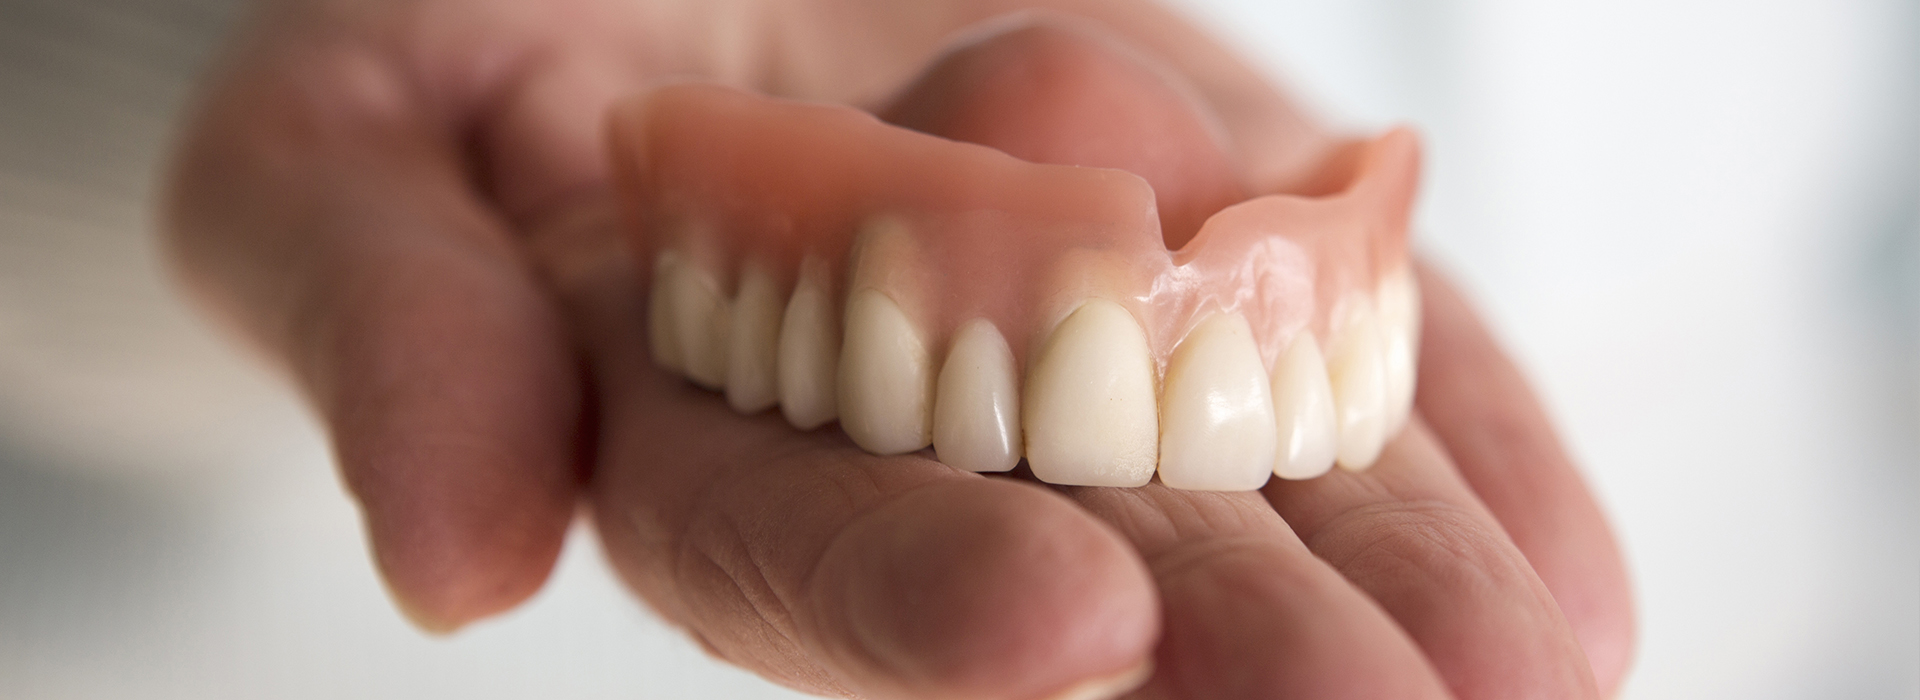 Glowing Smile Dental Studio | Veneers, Implant Dentistry and Digital Radiography